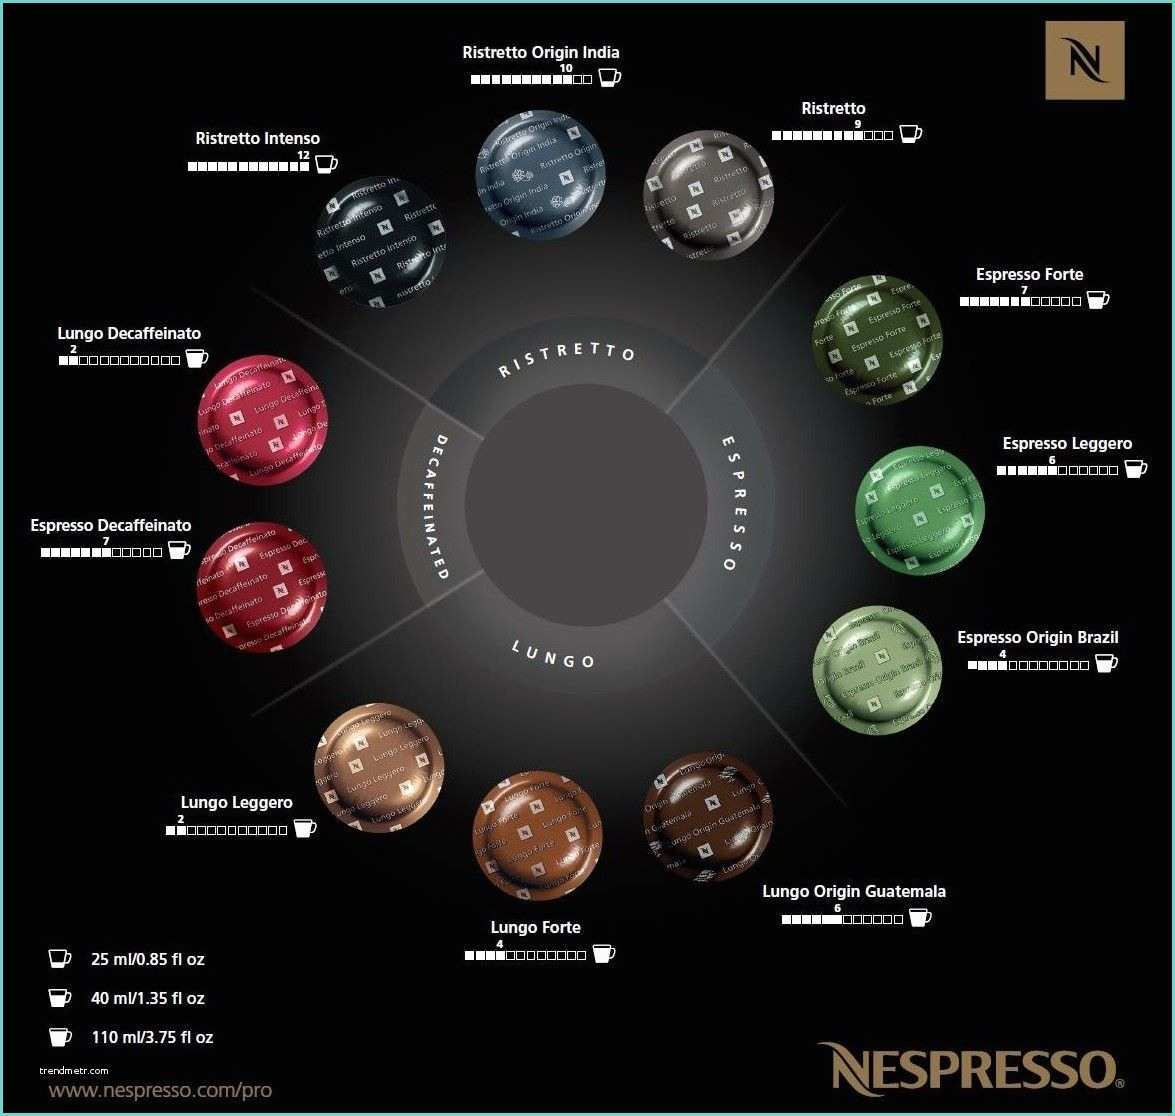 Capsules Nespresso Pro Tuttofood 2015 – Nespresso Presenterà Due Nuovi Grand Cru